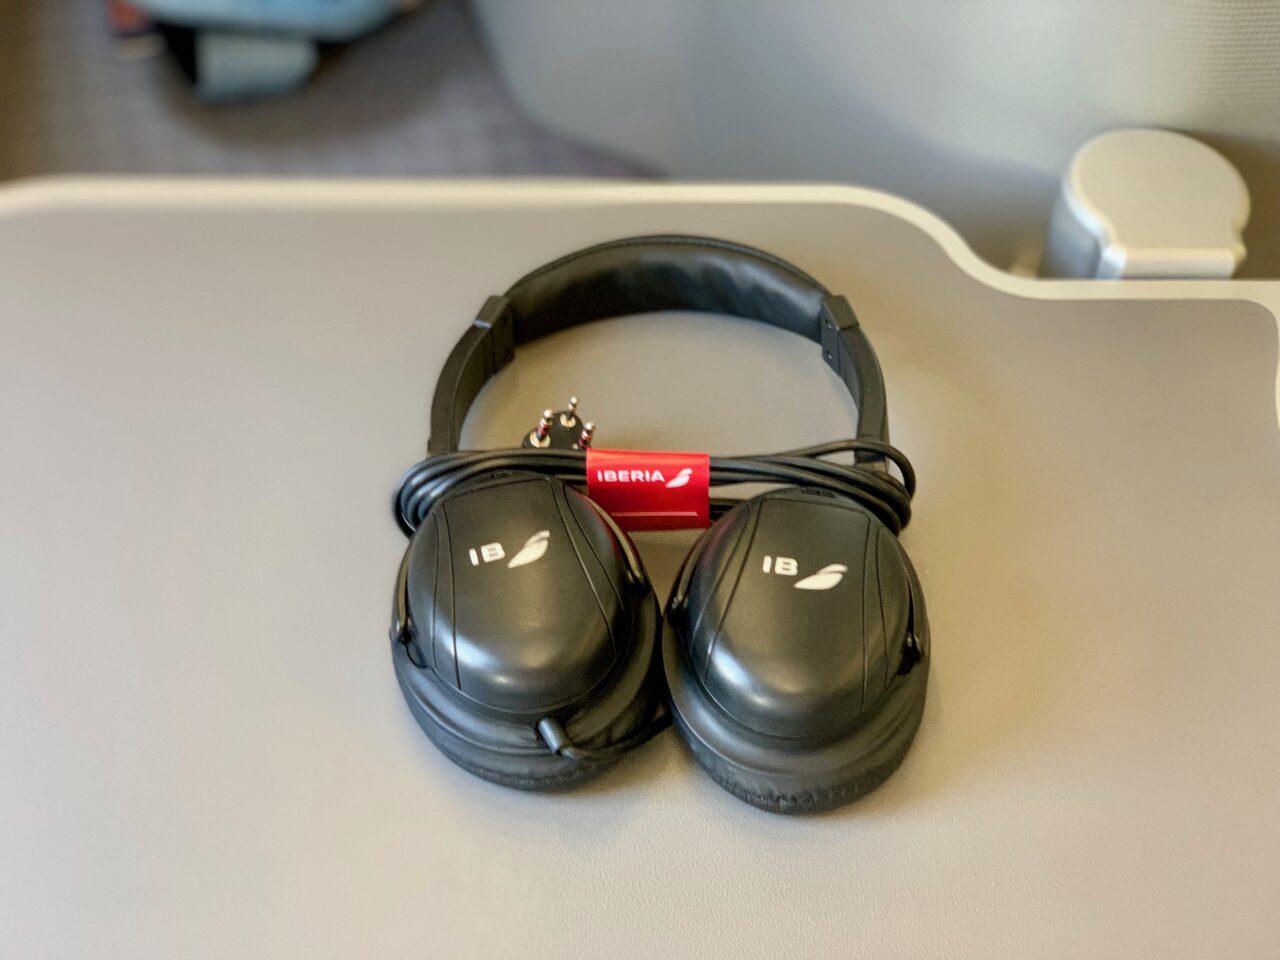 iberia headphones 